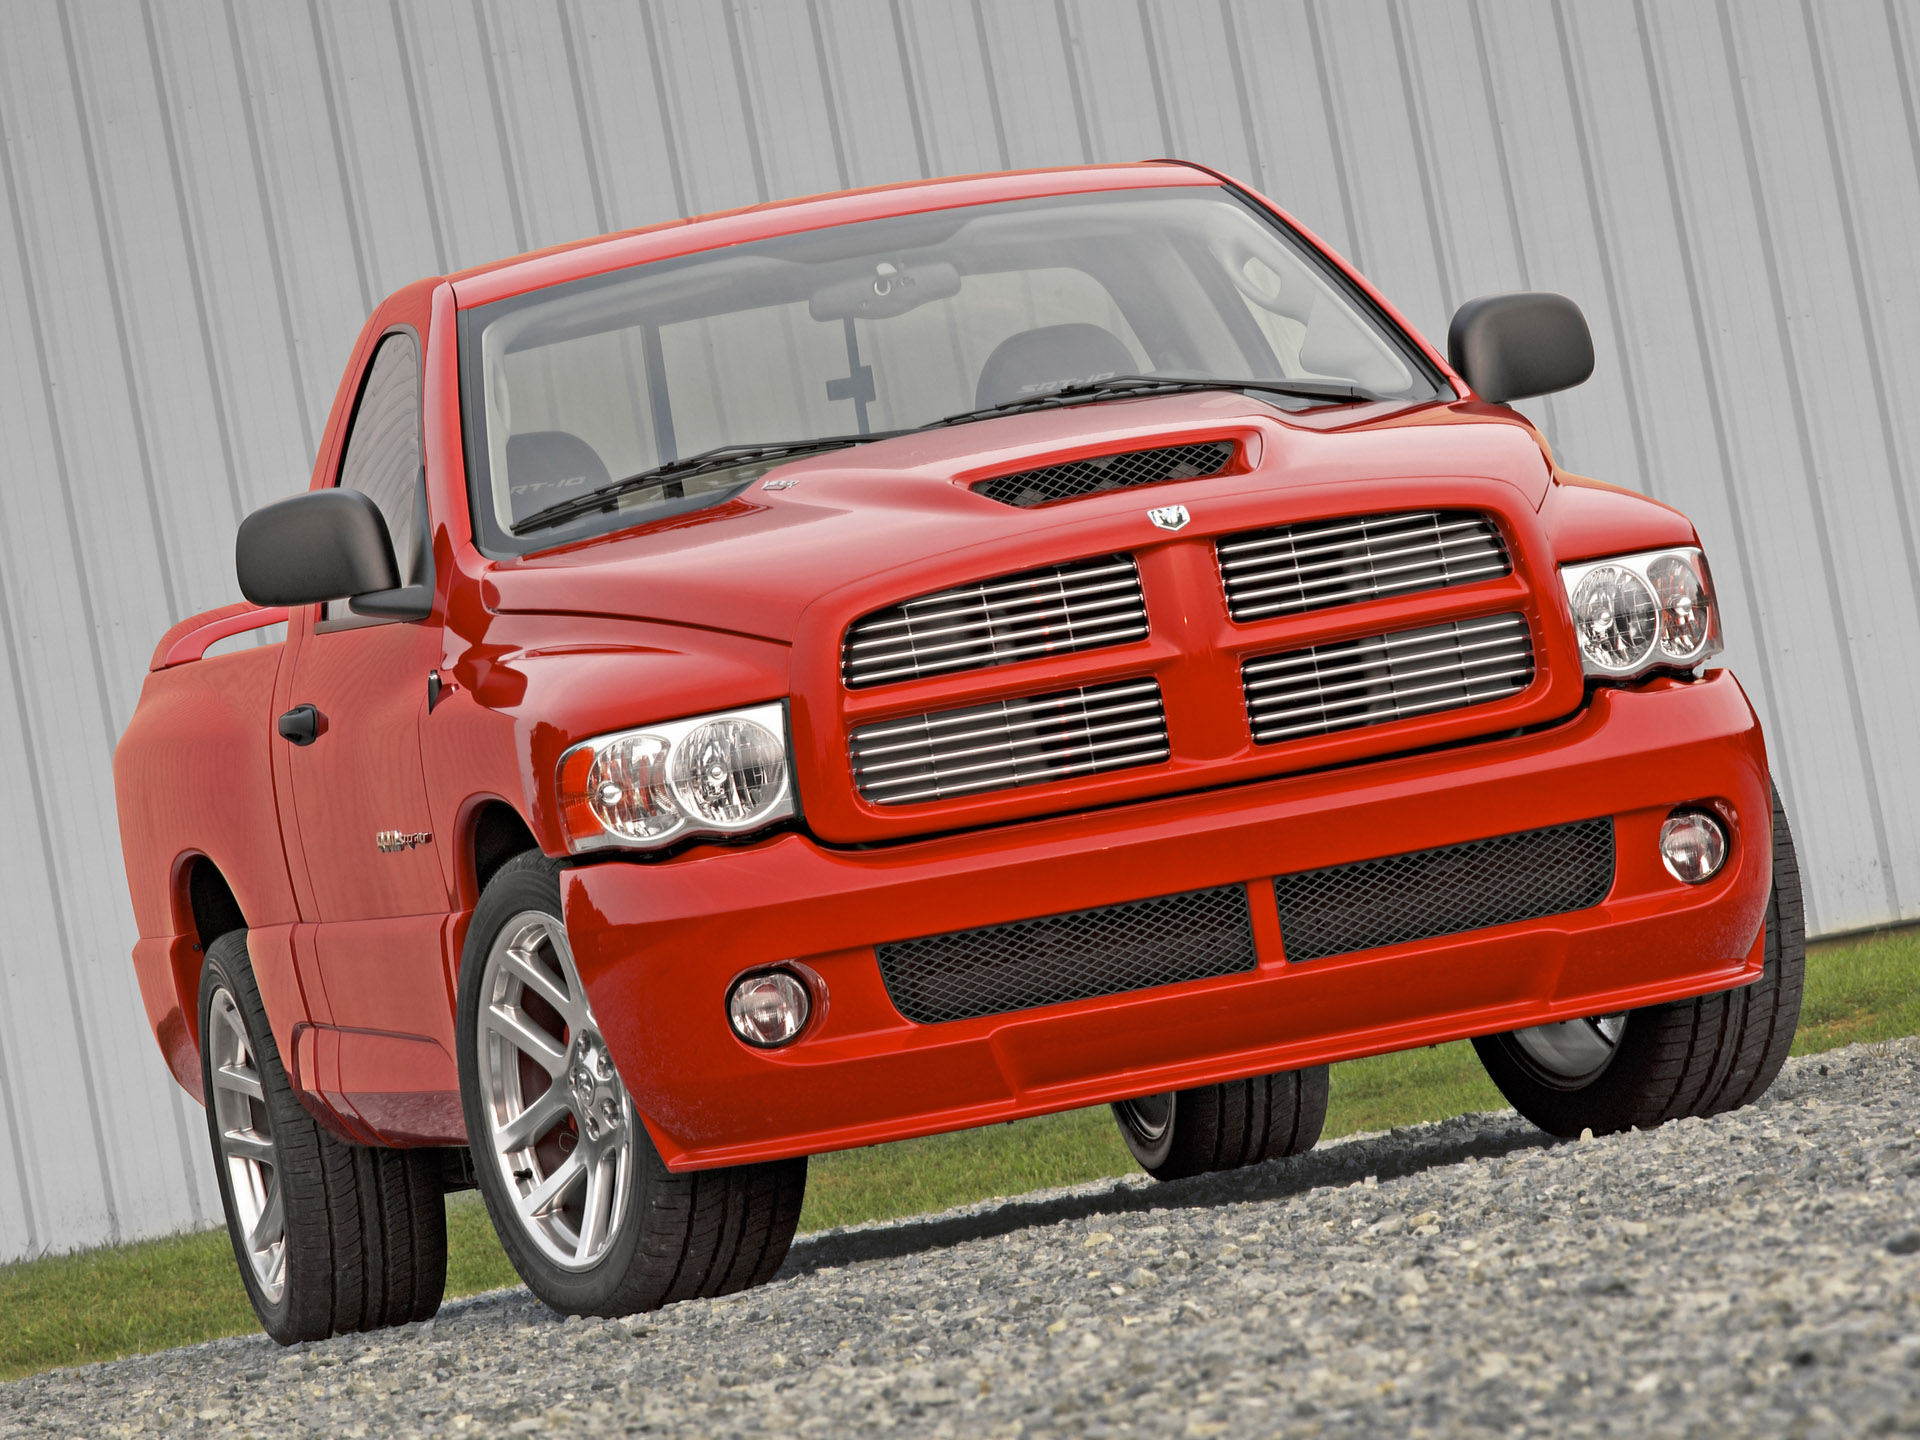 2004, Dodge, Ram, Srt 10, Pickup, Truck, Muscle, Supertruck Wallpaper